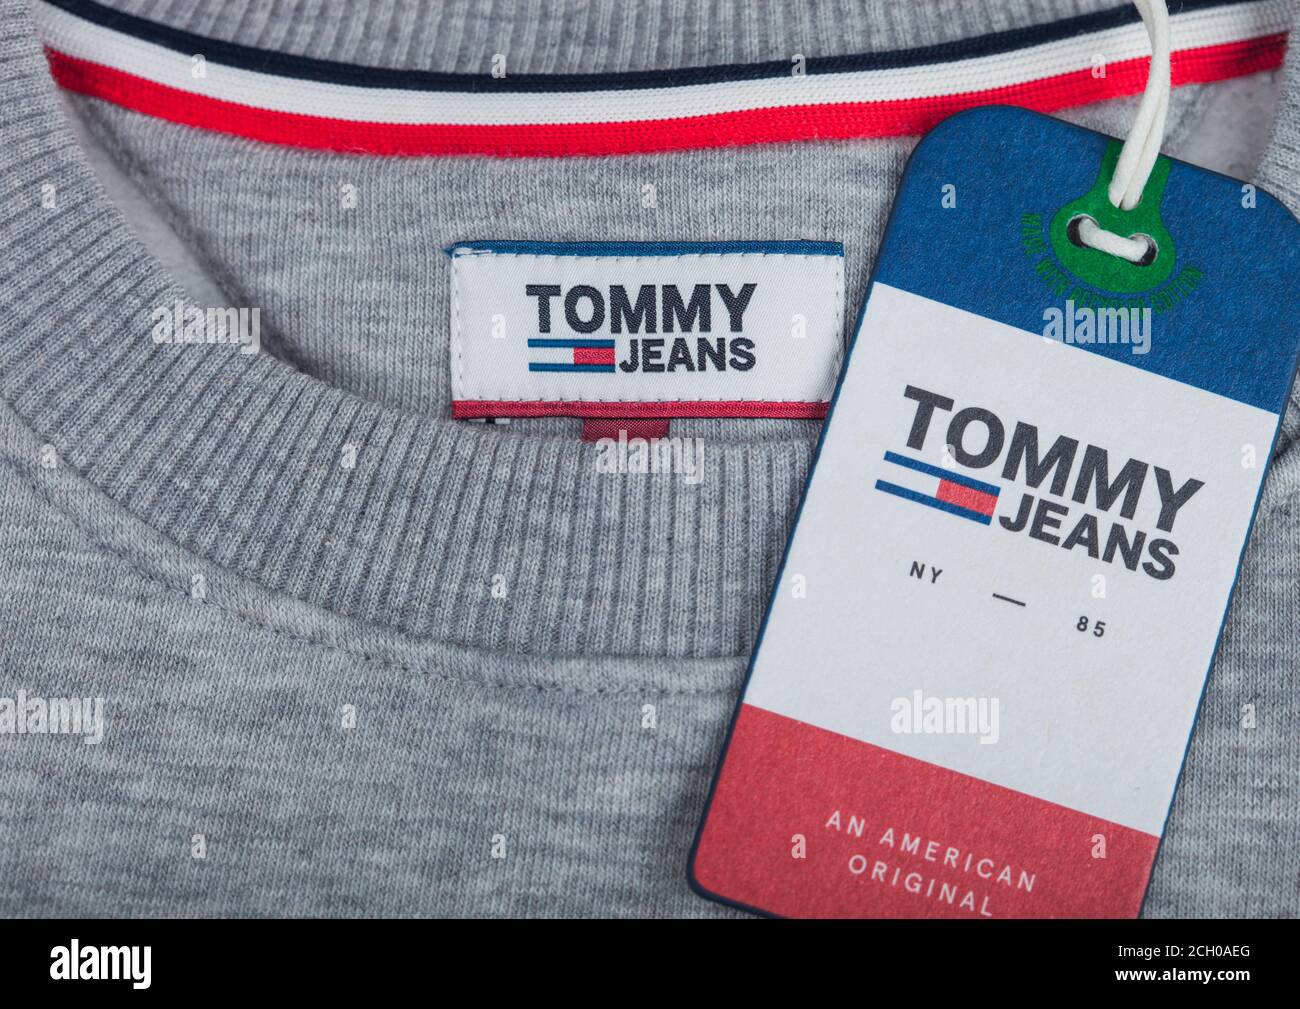 LONDRES, Royaume-Uni - 09 SEPTEMBRE 2020:Tommy Hilfiger étiquette et  étiquette de vêtement sur tissu en coton gris Photo Stock - Alamy